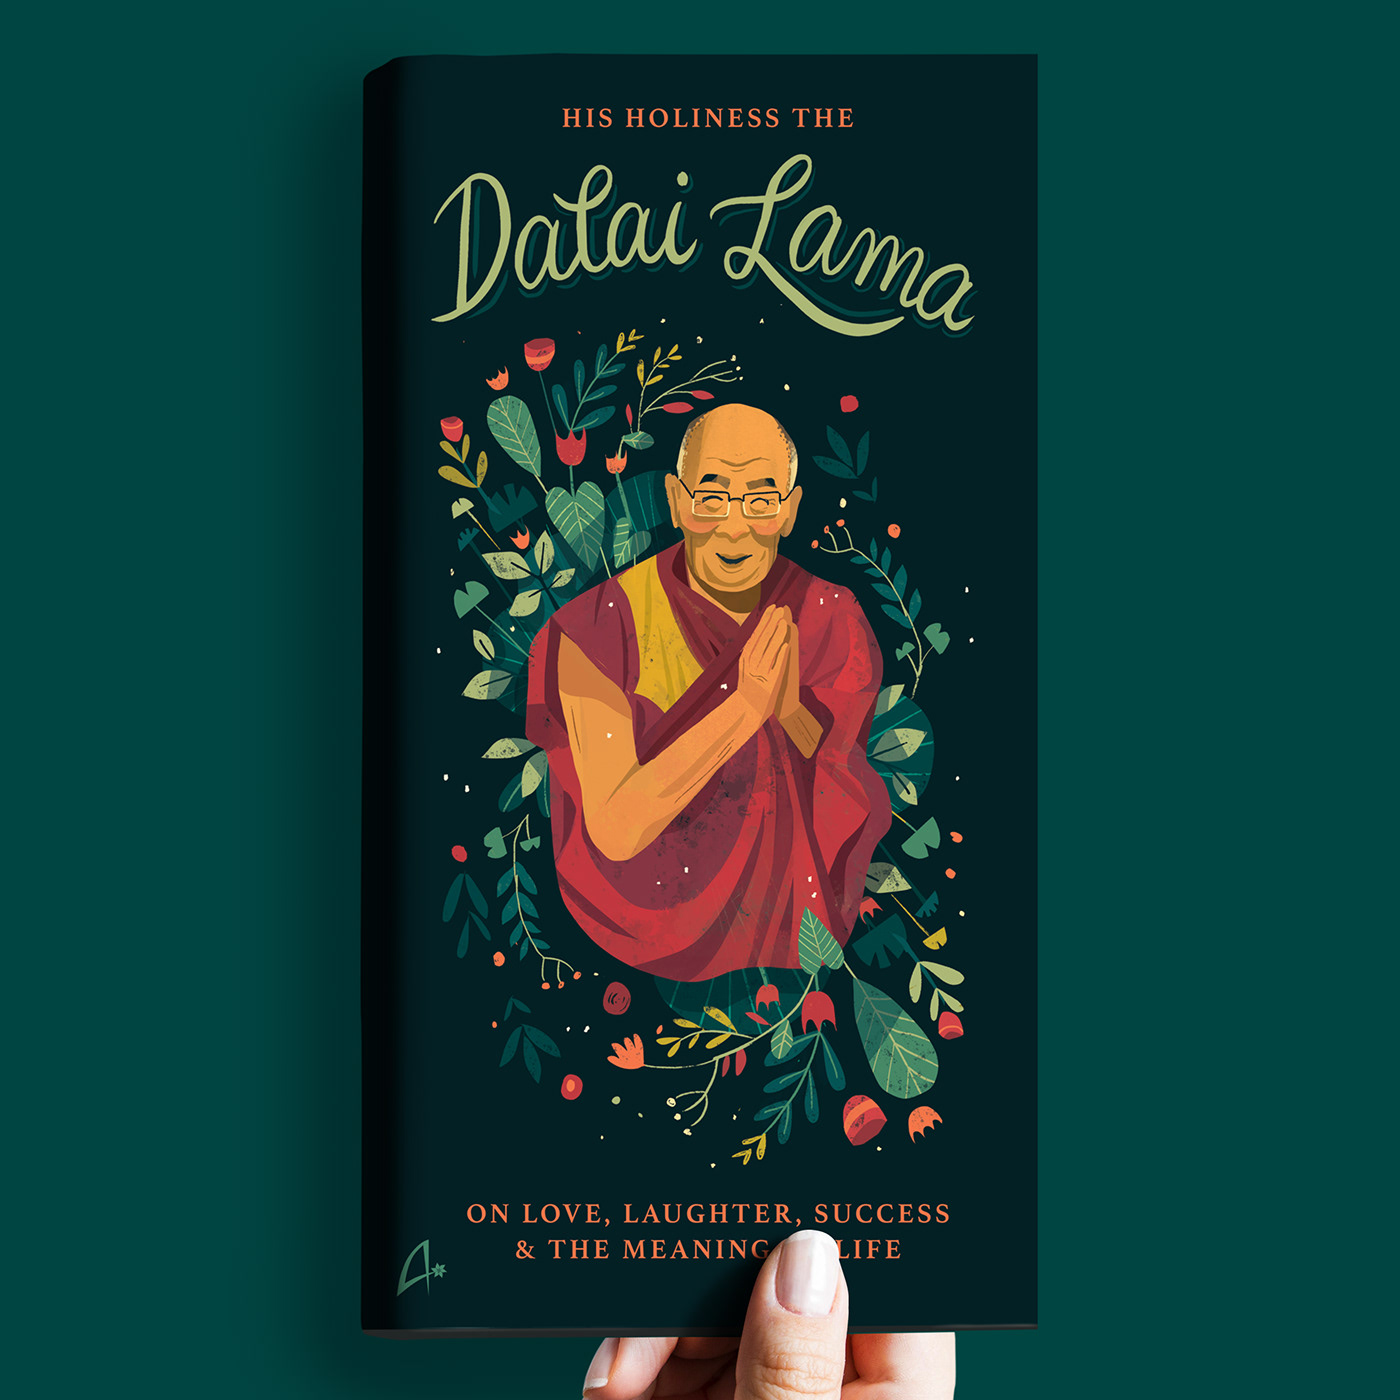 Dalai Lama book cover book cover illustration cover design Cover Art book cover art Flower Illustration dalai lama illustration